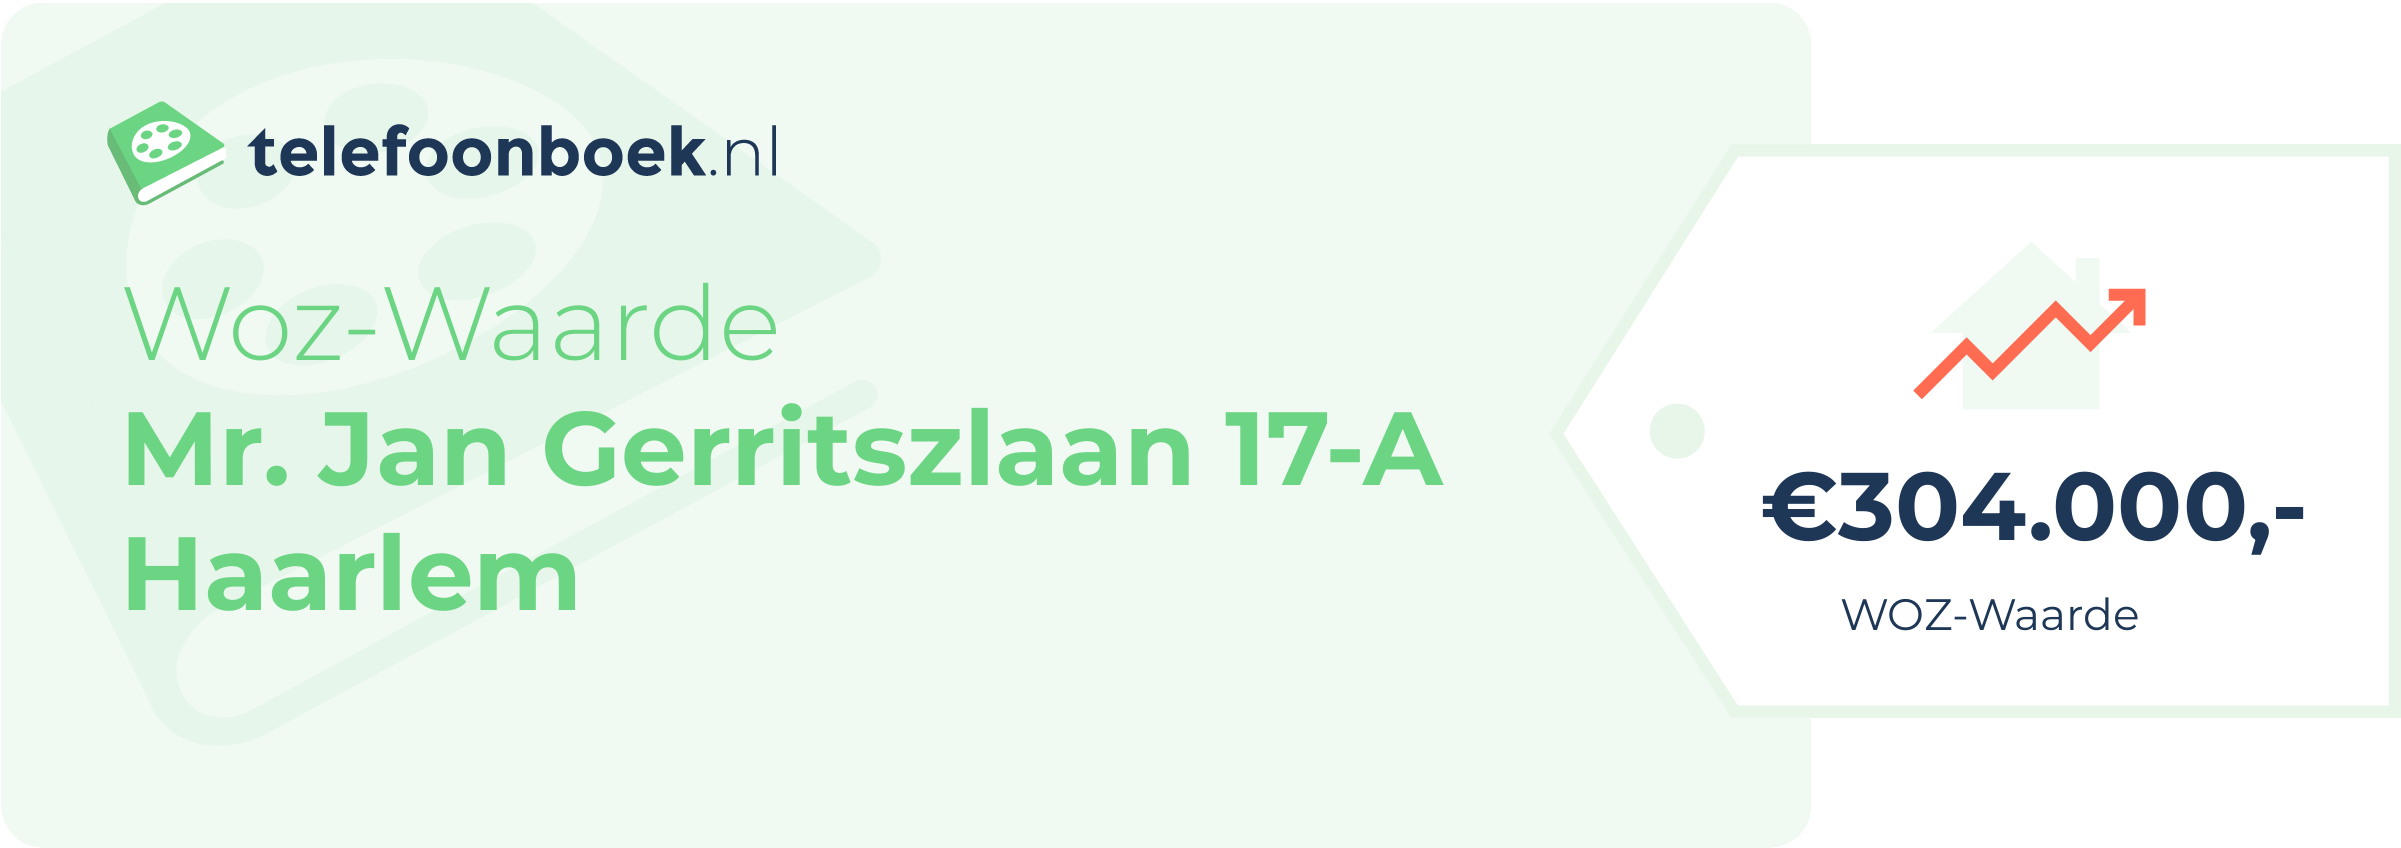 WOZ-waarde Mr. Jan Gerritszlaan 17-A Haarlem